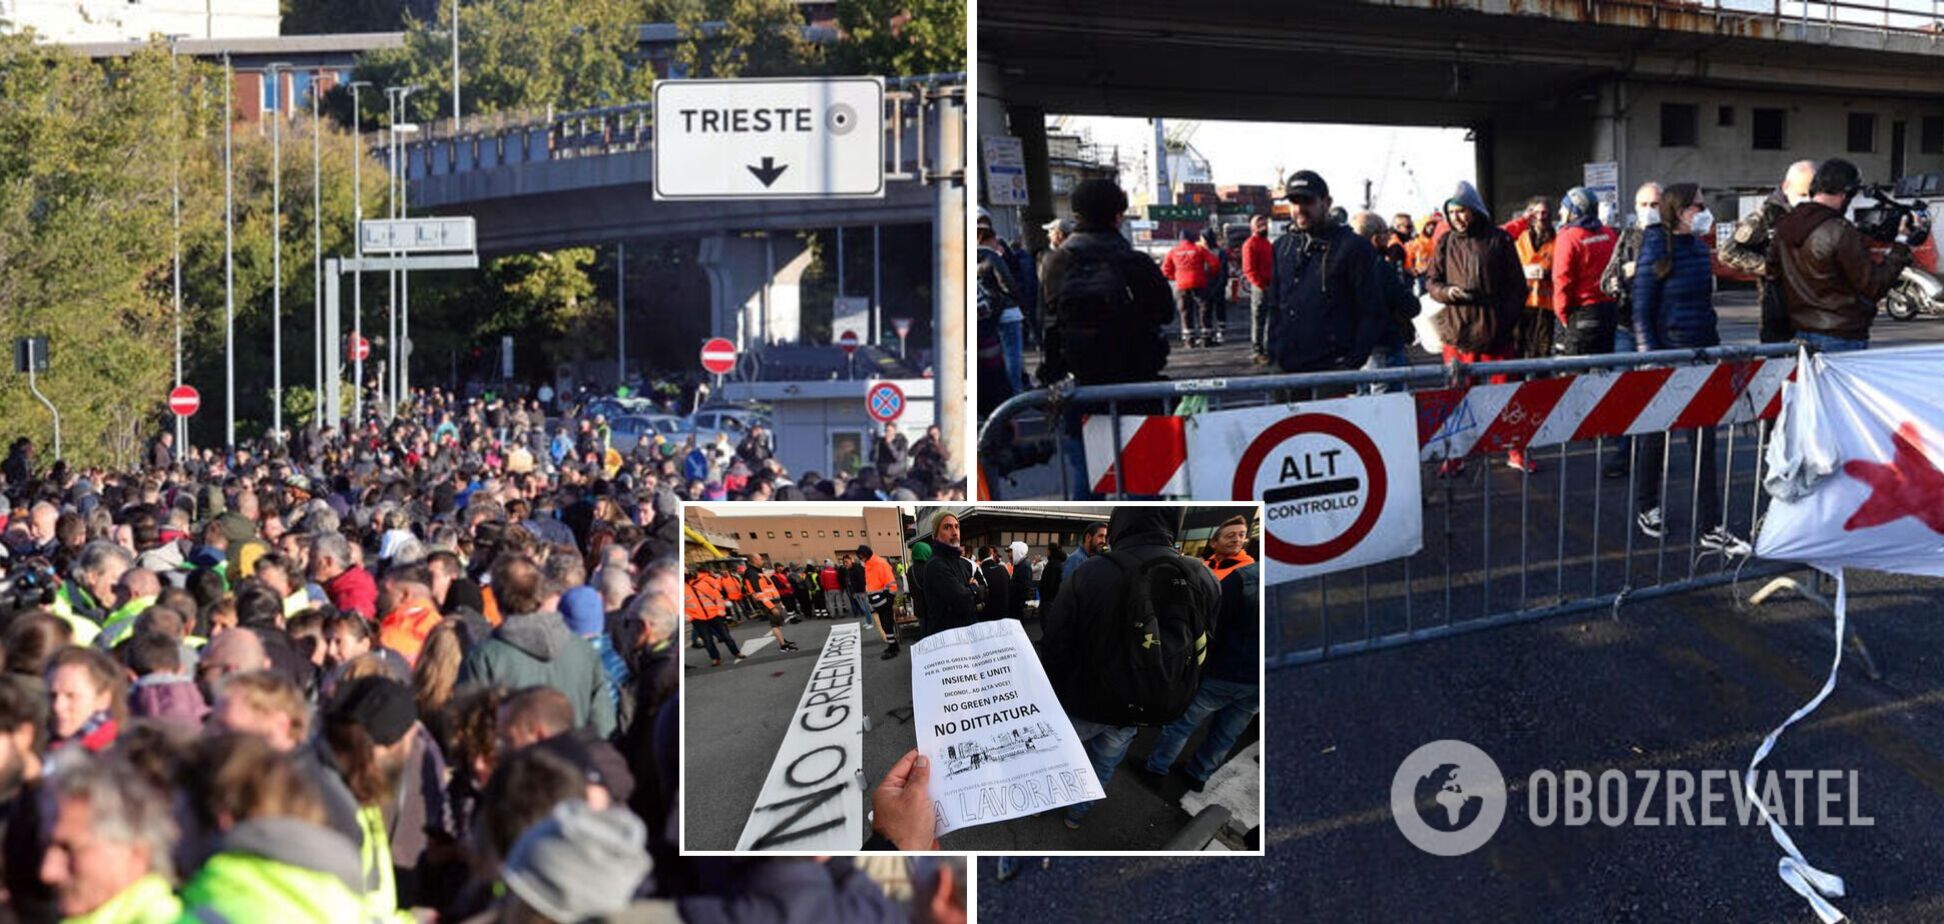 В Італії 'паспорта здоров'я' стали обов'язковими для всіх працівників: люди вийшли на протест. Фото та відео